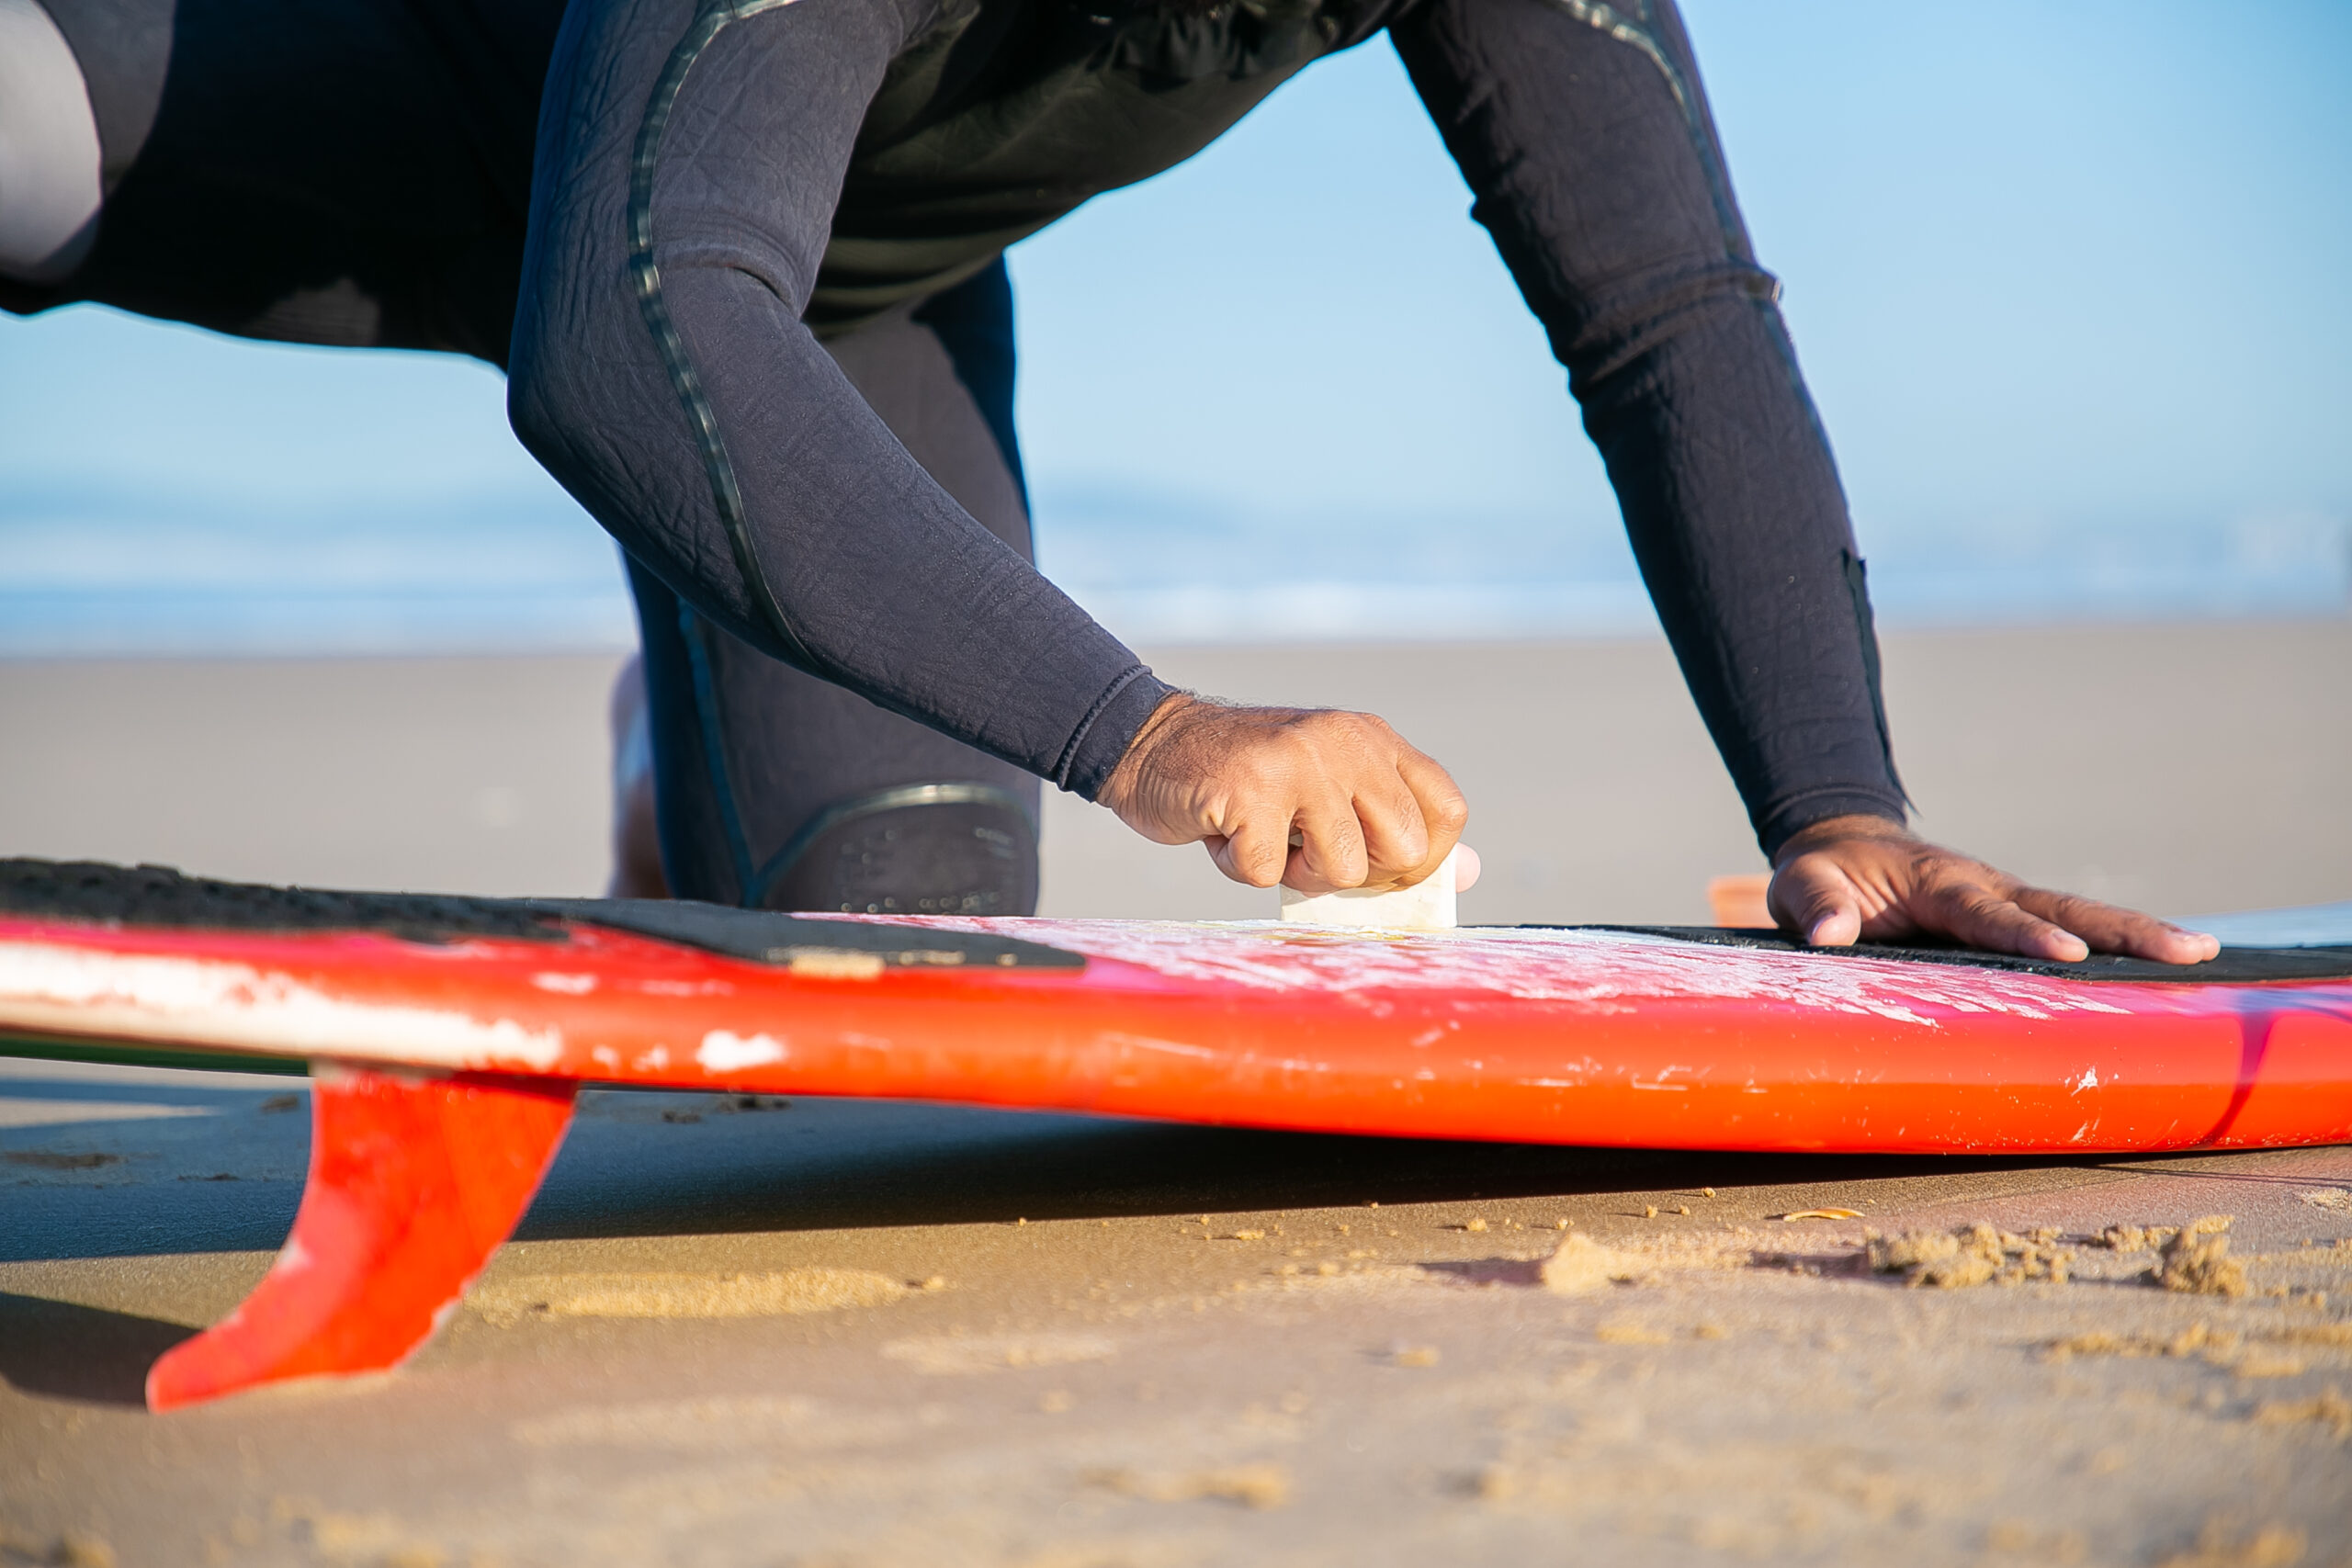 Male surfer in wetsuit waxing surfboard on sand on ocean beach.